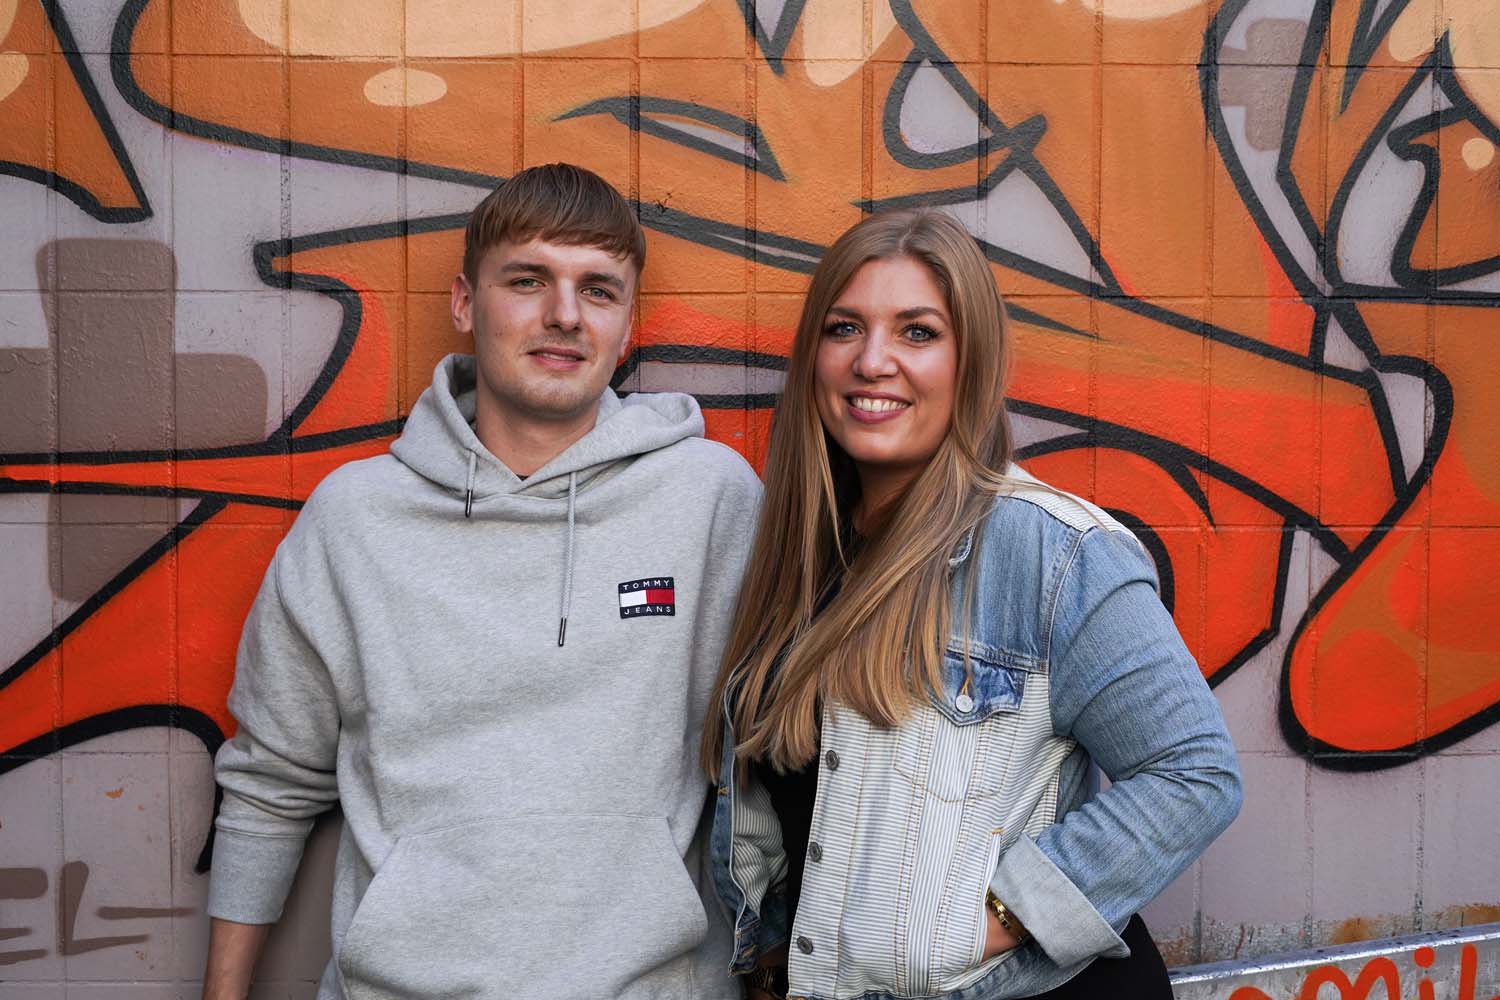 Das Bild zeigt zwei junge Erwachsene vor einer Graffitiwand.